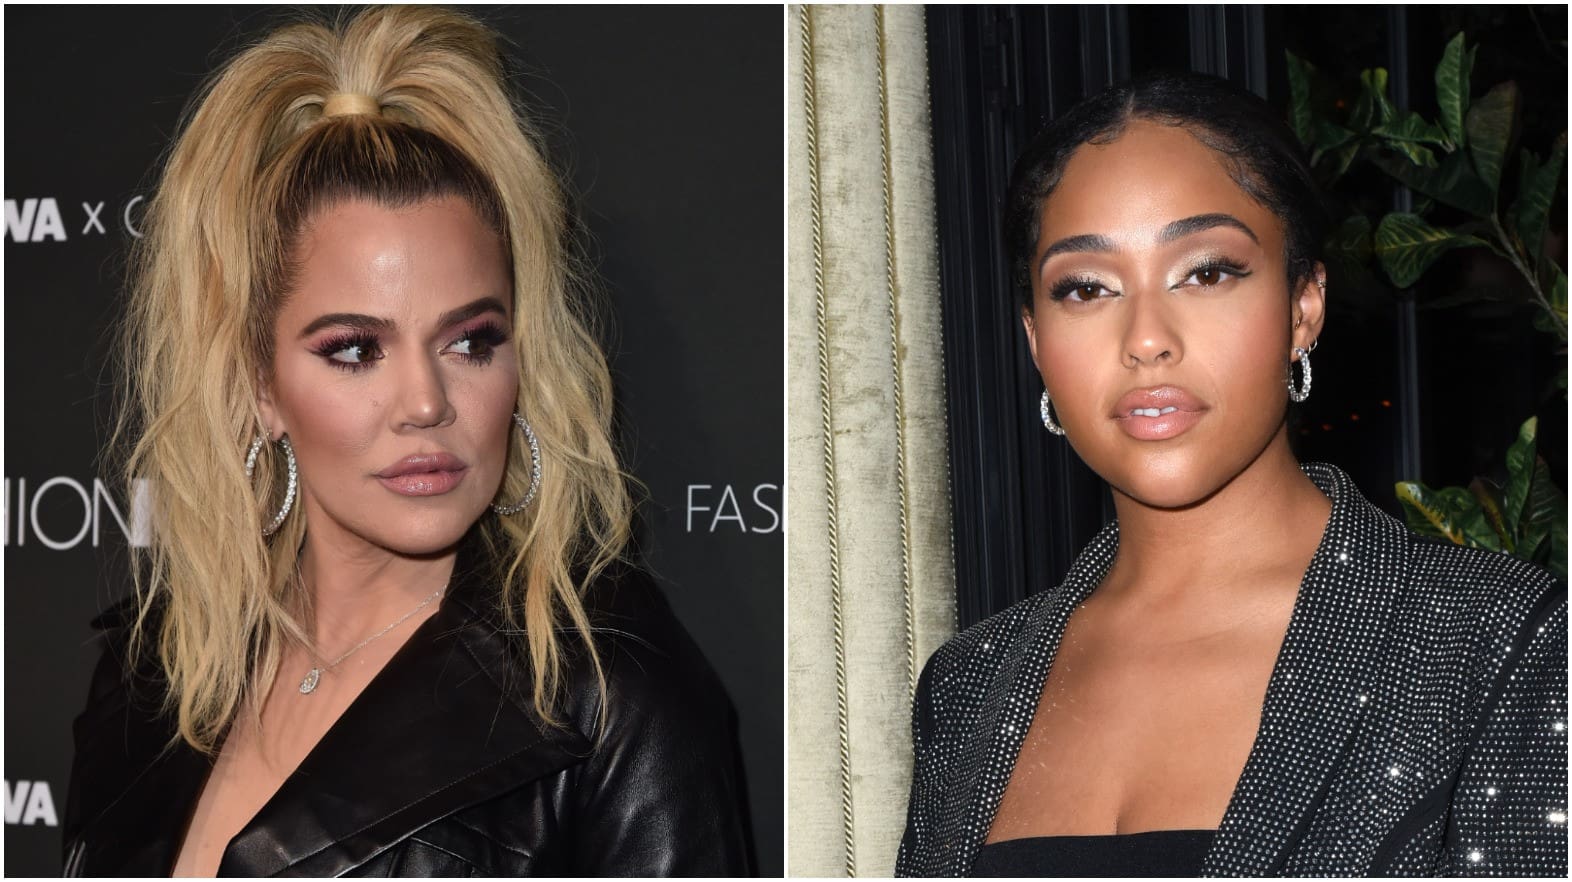 Khloe Kardashian's Recent Message Has People Thinking She's Shading Jordyn Woods